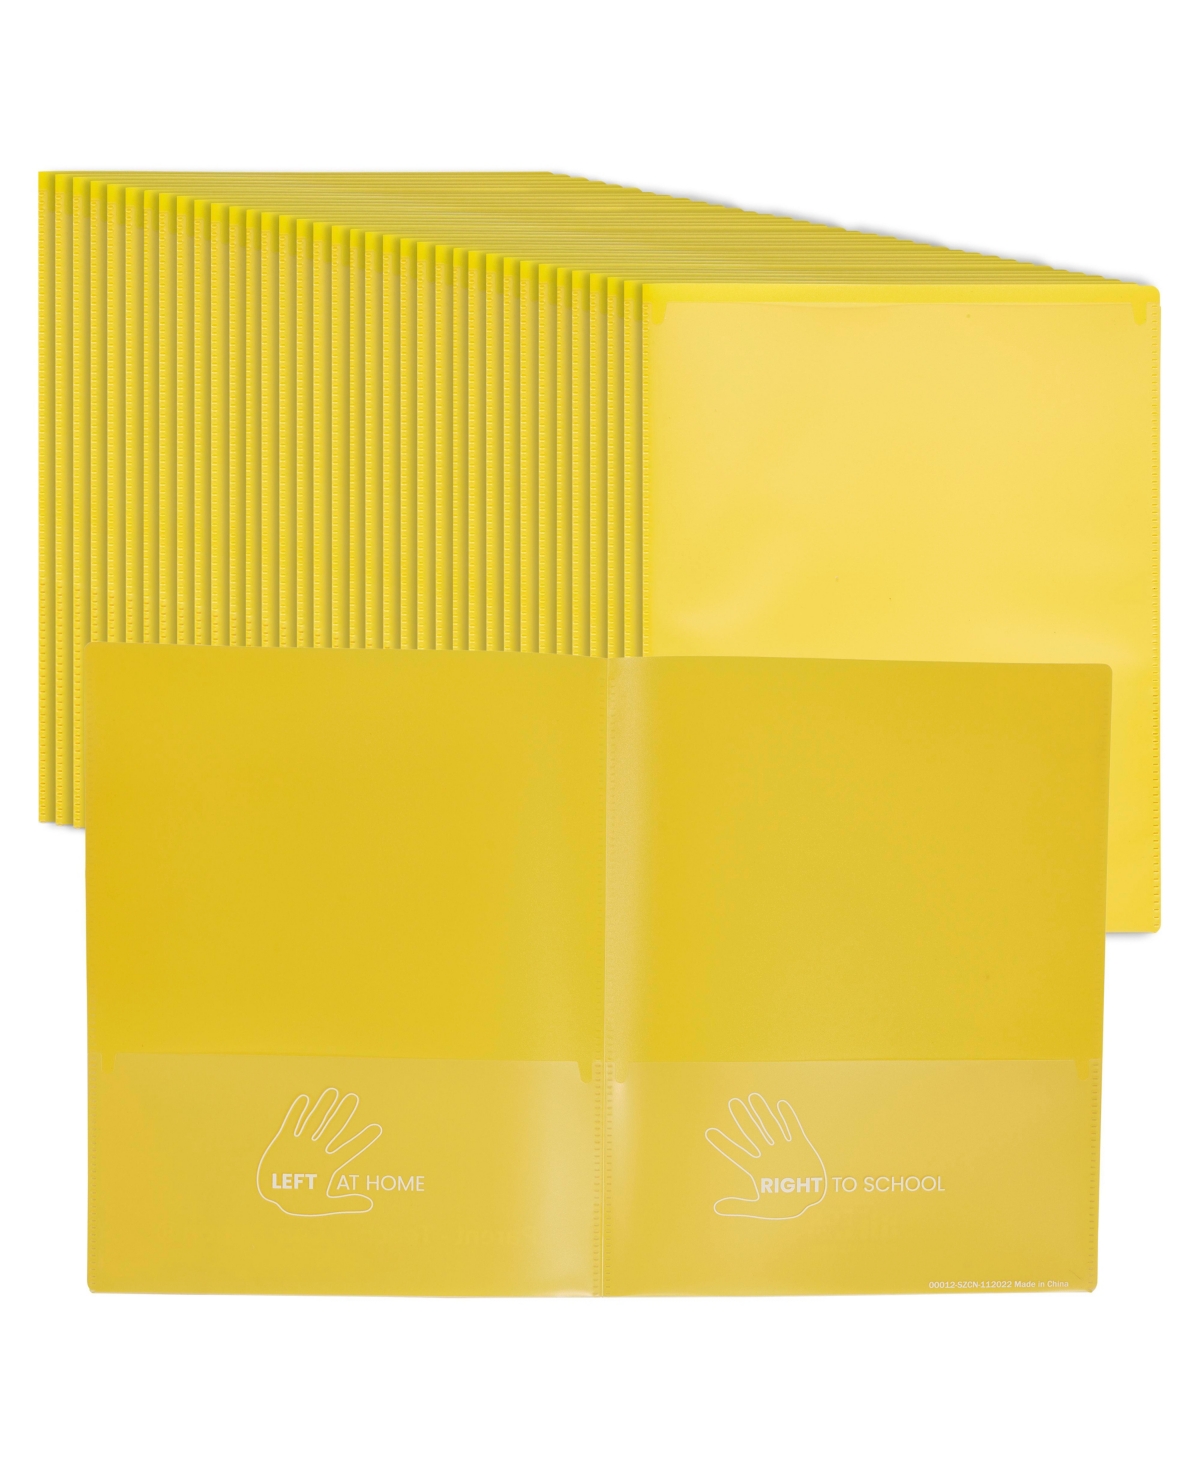 2-Pocket Parent-Teacher Classroom Communication Folder, Assorted, 36-Piece - Yellow